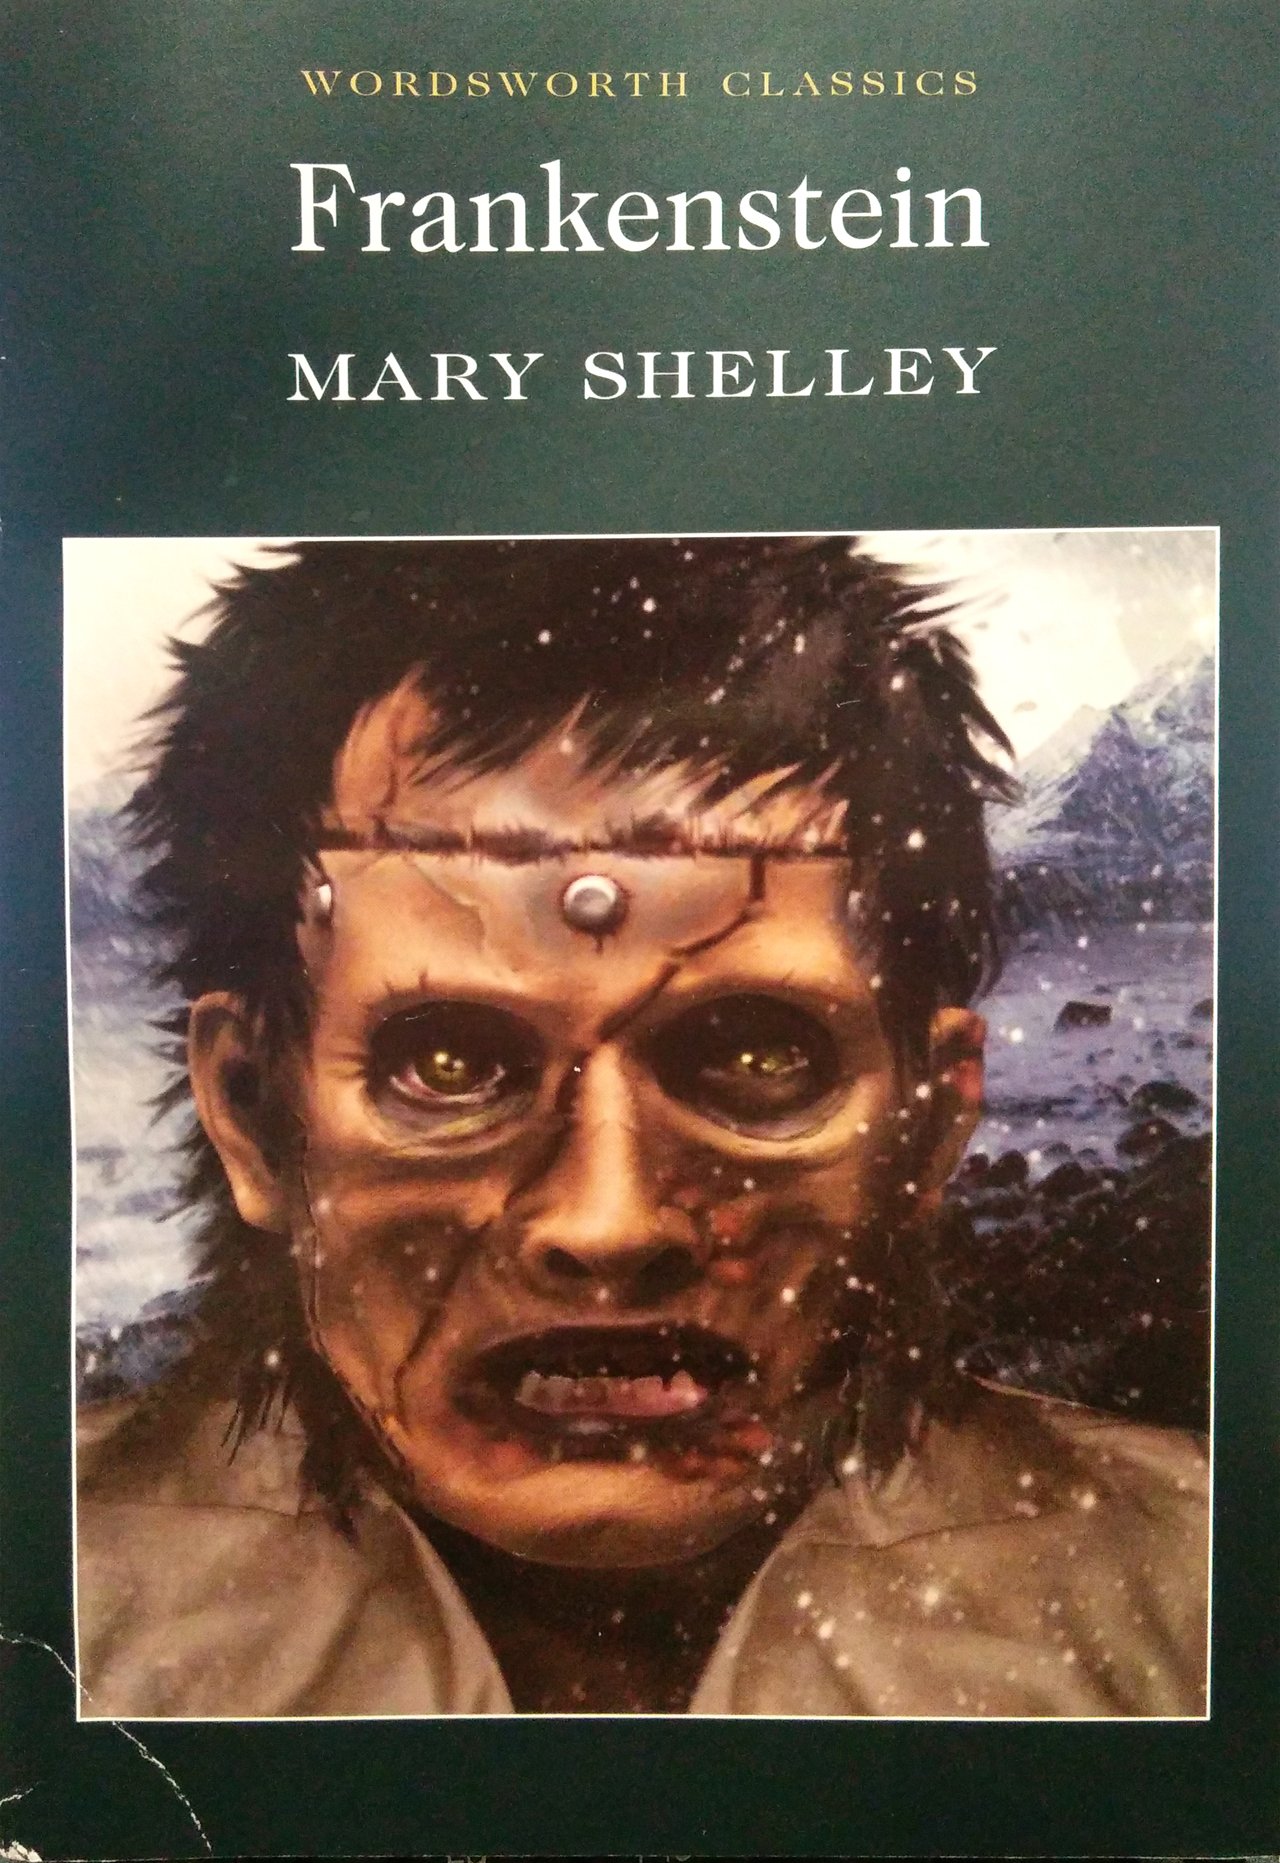 Автор франкенштейна. Frankenstein Mary Shelley книга. Франкенштейн обложка книги.